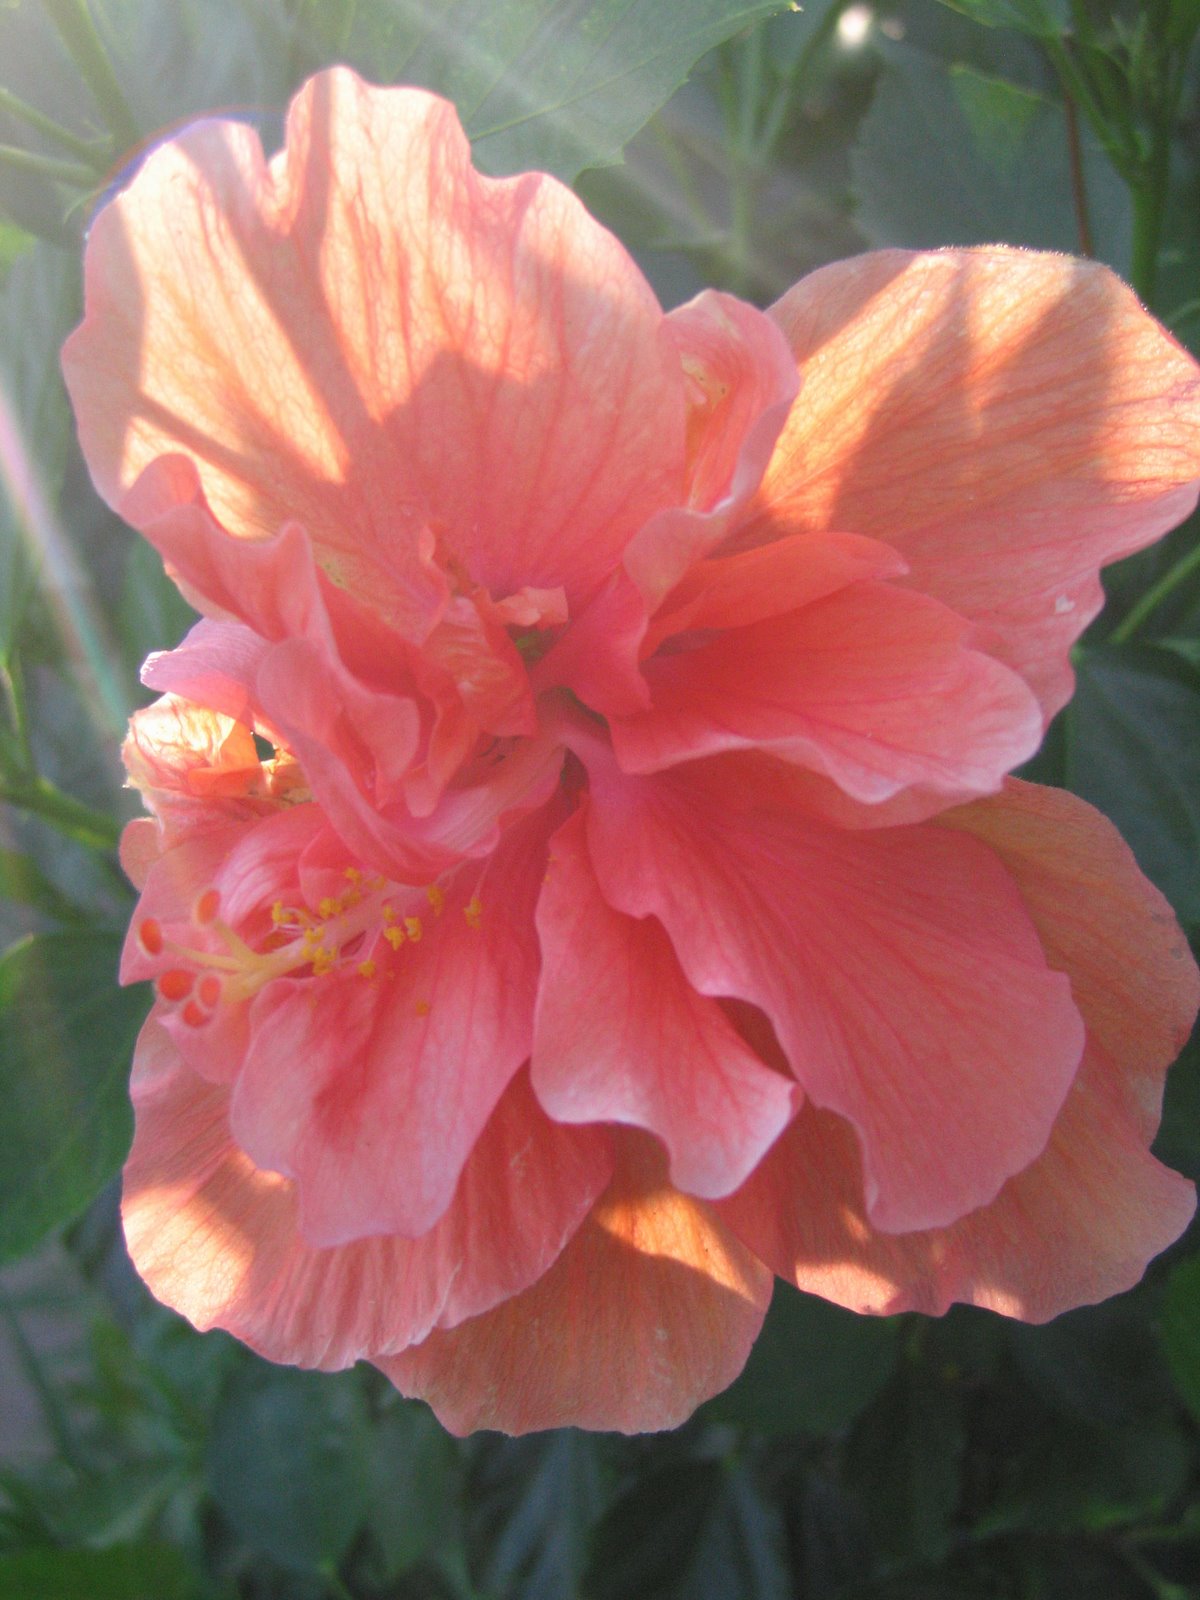 [Back+to+the+sun_peach+flower.jpg]